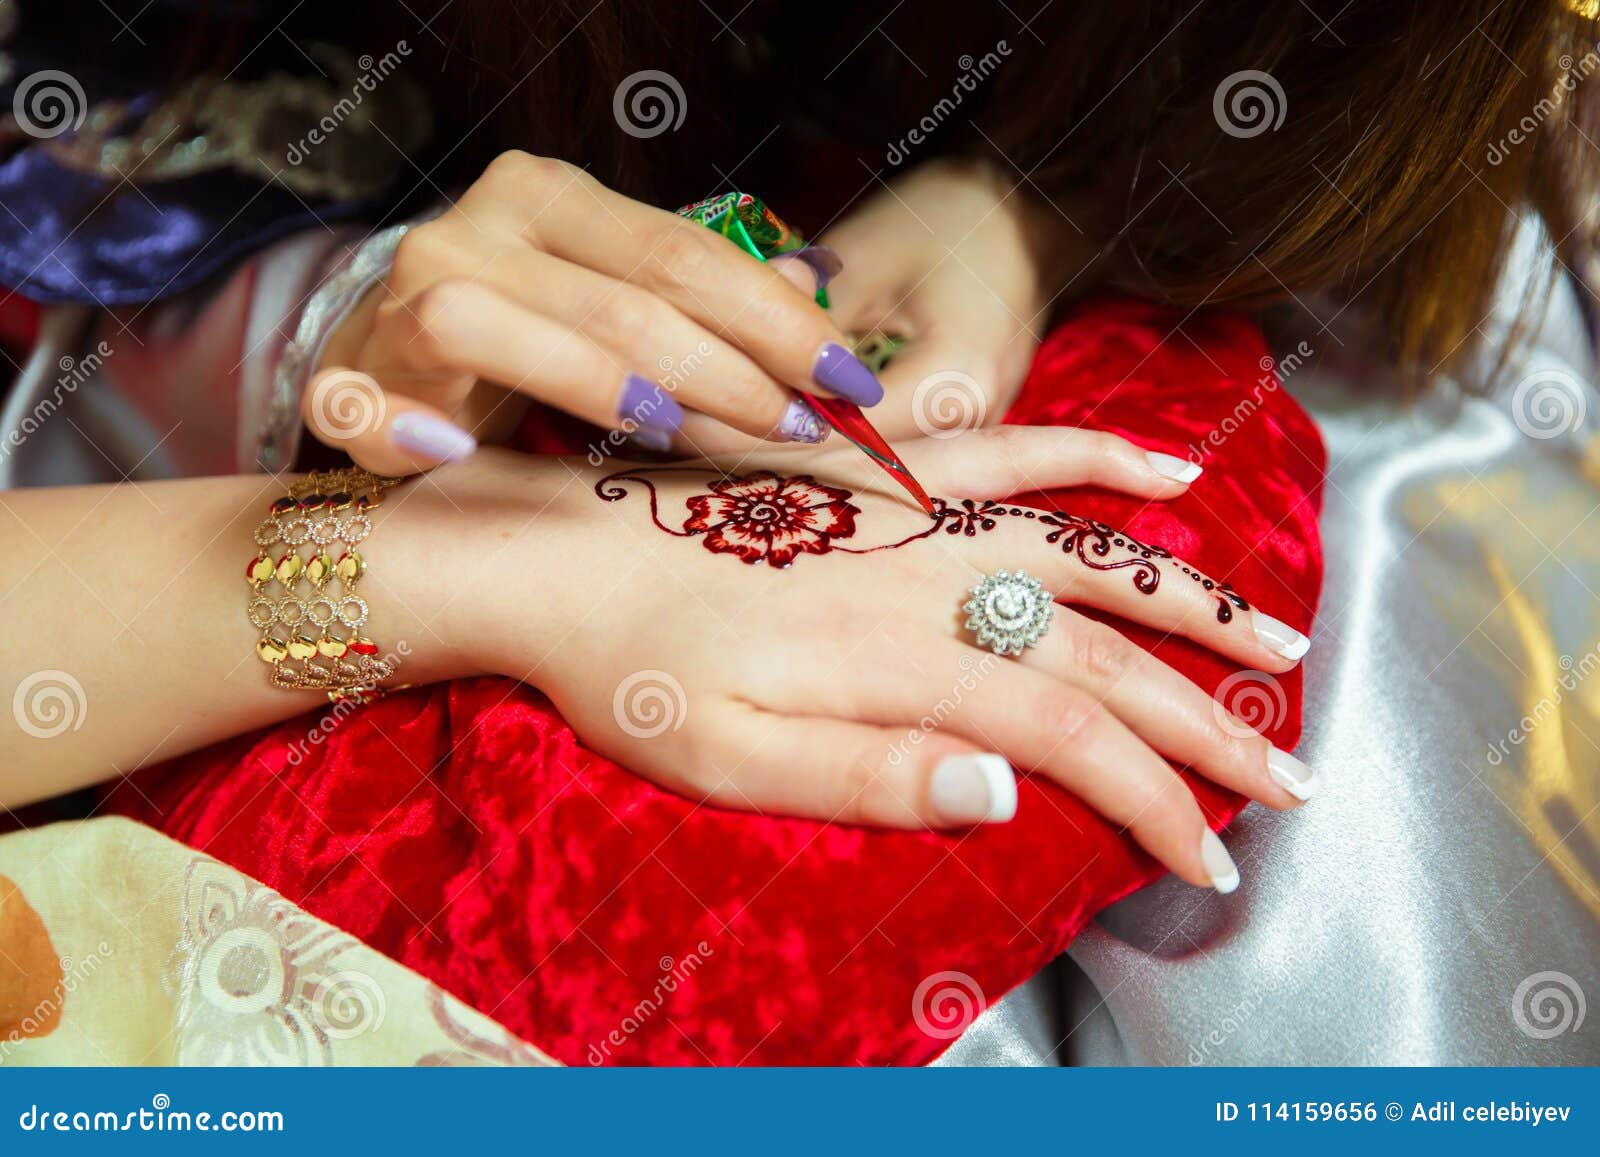 Bracelet Type Mehndi Design Easy | Bracelet Mehndi Design 2019 | Mehendi  Training Center | Finger mehndi style, Henna designs, Mehndi designs